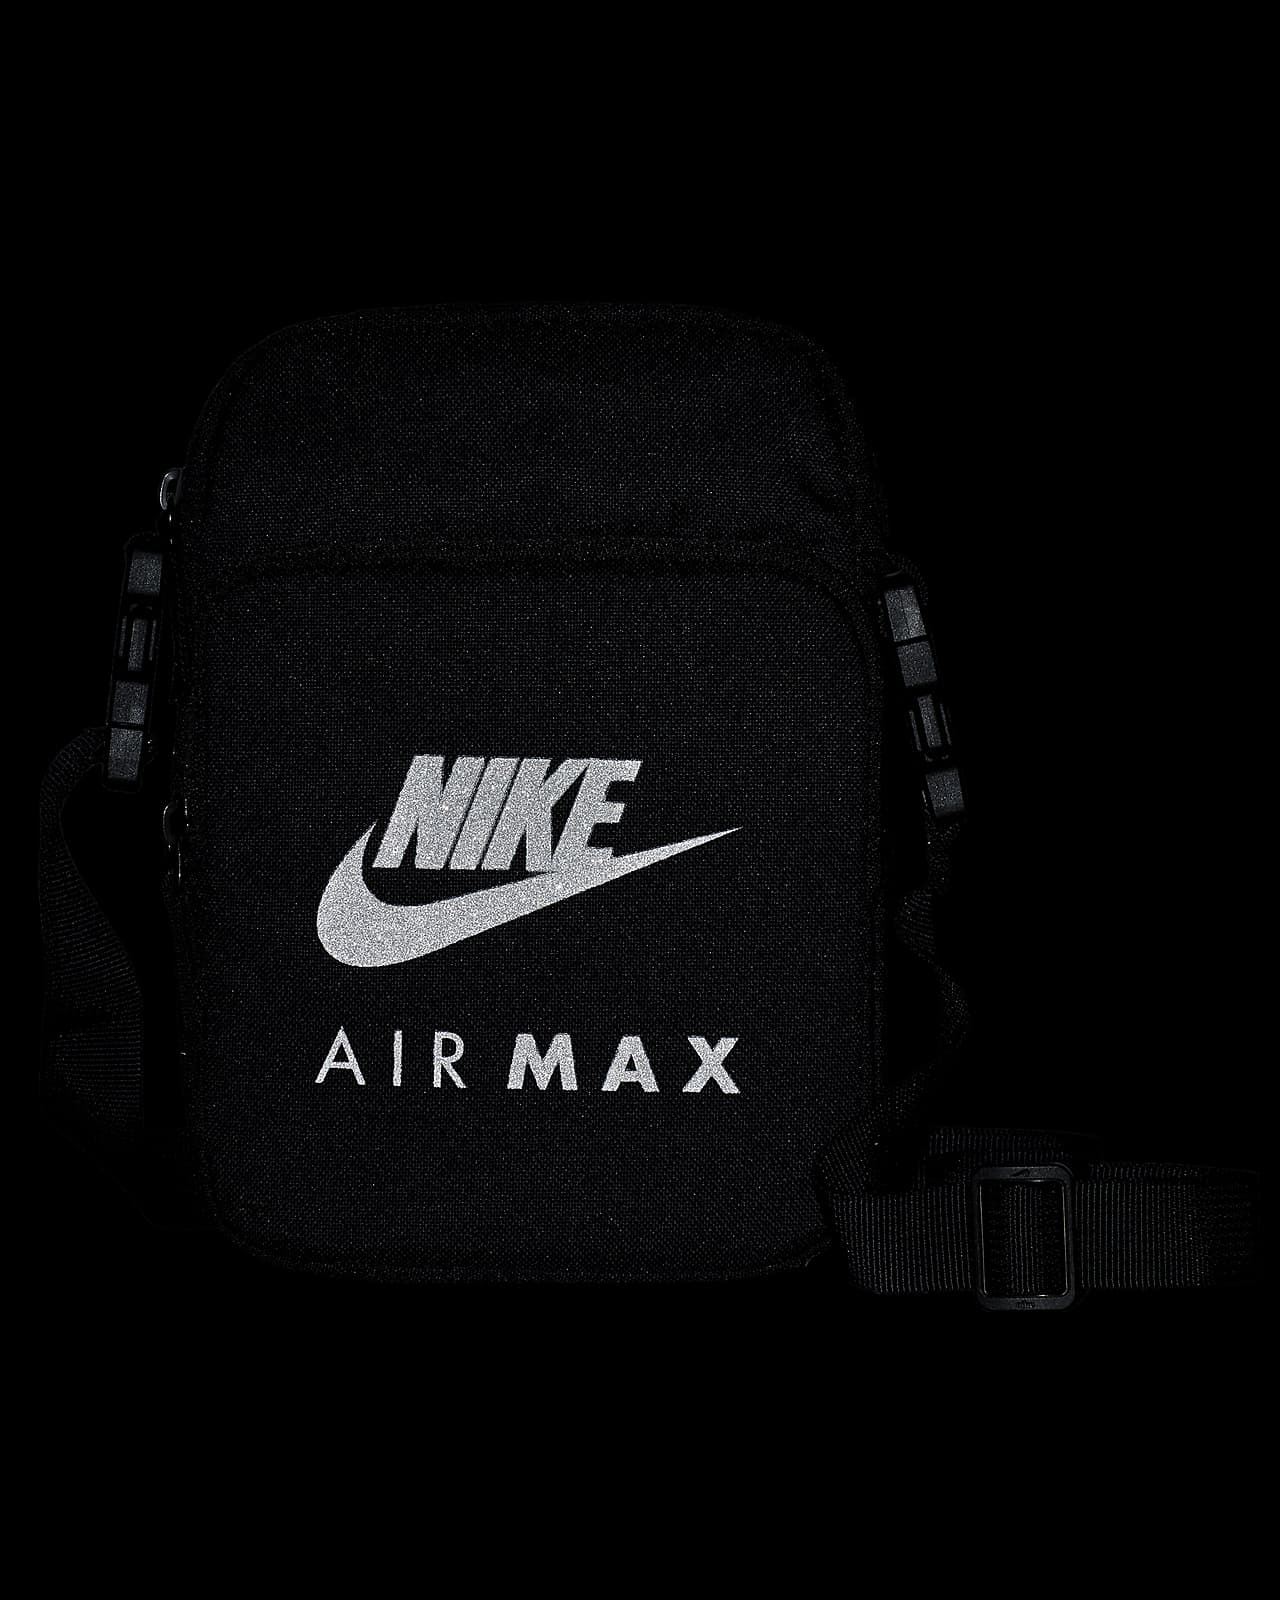 nike air max advantage bag